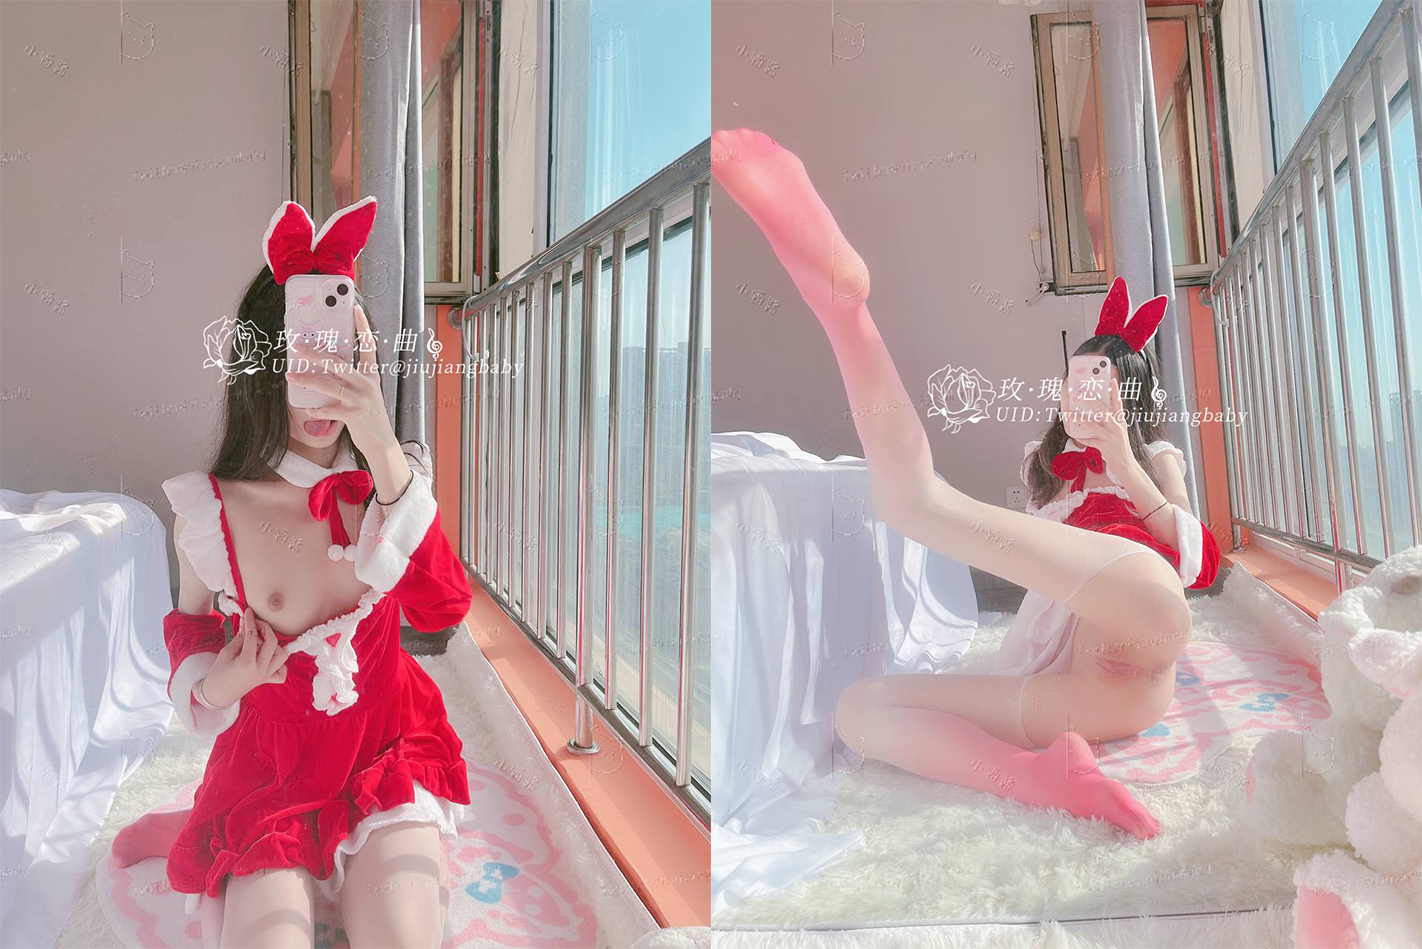 트위터 팔로워 27 만명, 순수 미소녀 [시우 시우 소스] 크리스마스 특집 핑크 보지의 열정적 인 내부 촬영